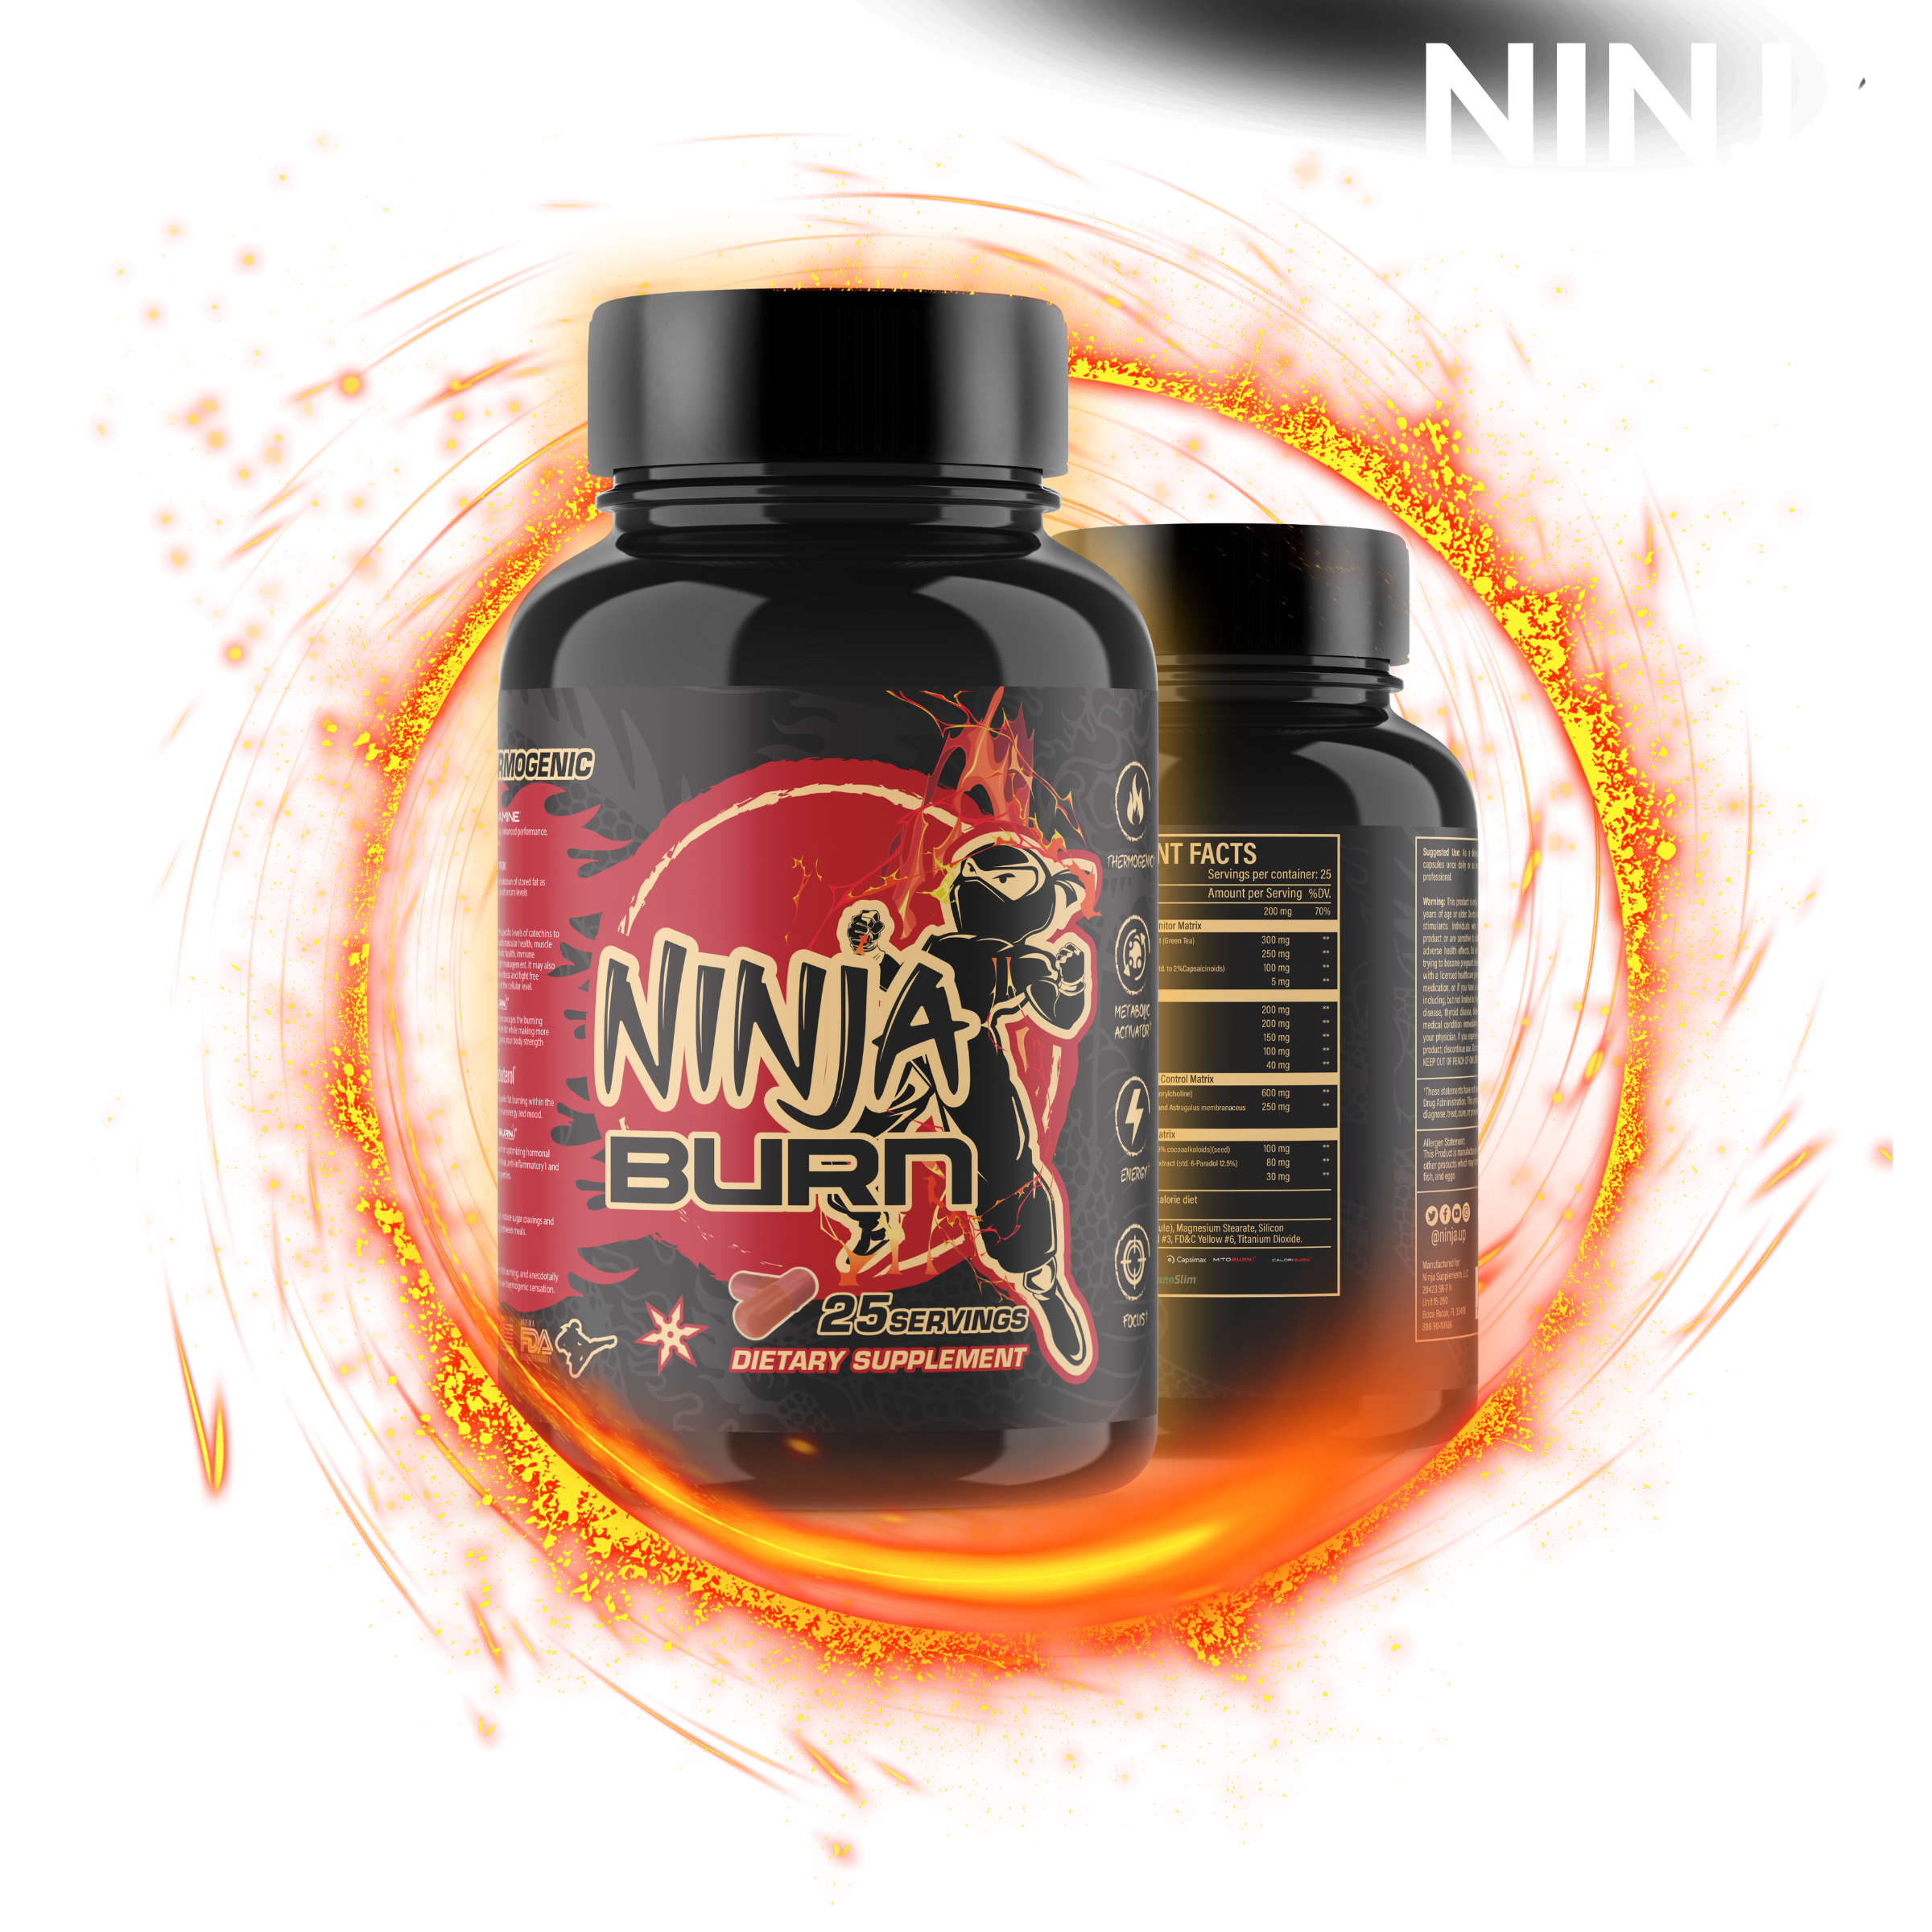 Copy of ninja bogo summer email (6)